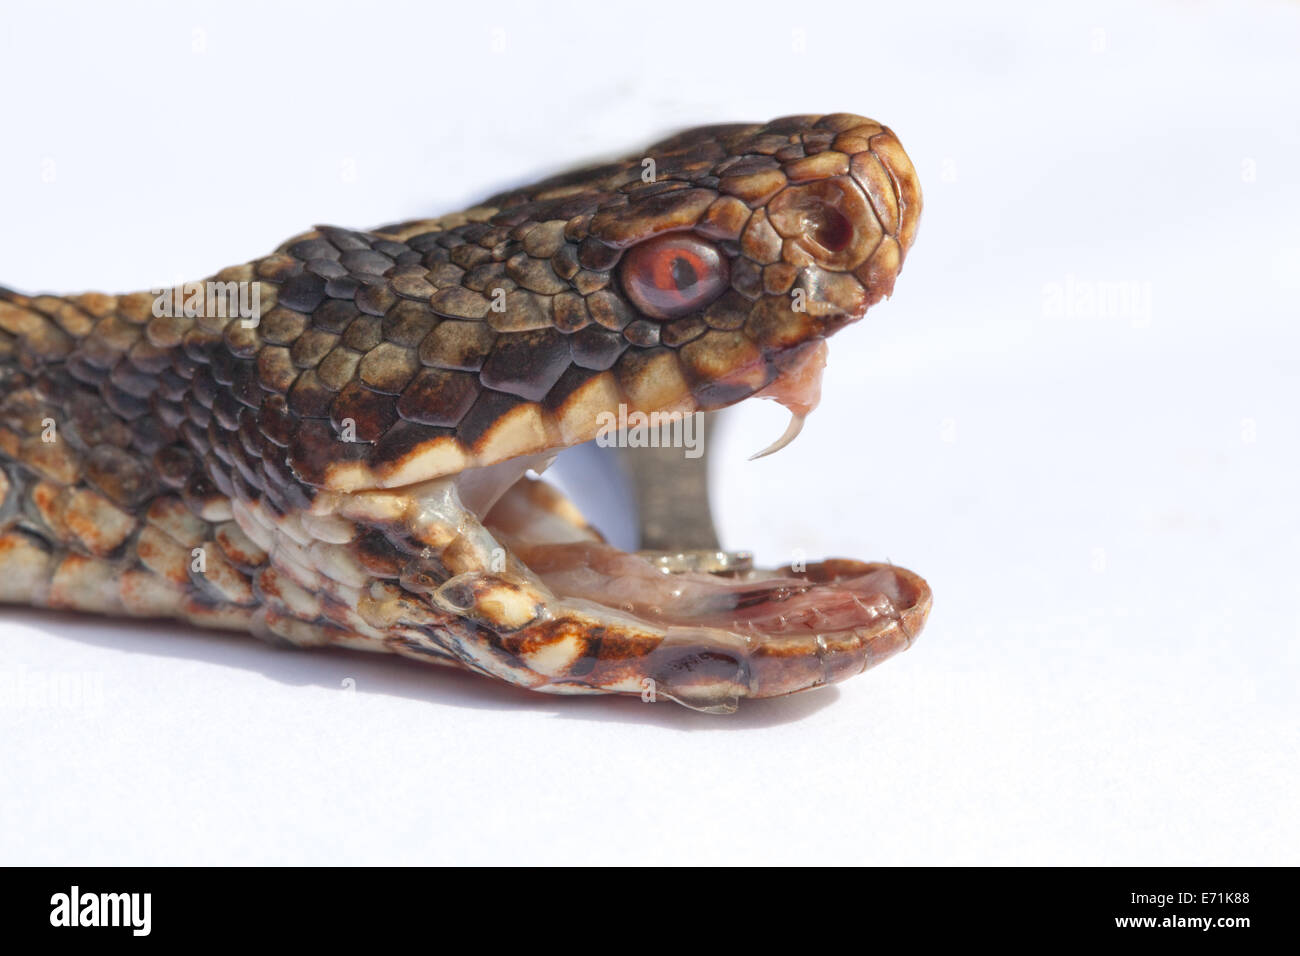 Addierer oder nördlichen Viper (Vipera Berus). Kopf der Schlange mit Jaws durch Zange offen gehalten; aufschlussreiche Zähne einschließlich rechten Fang. Stockfoto